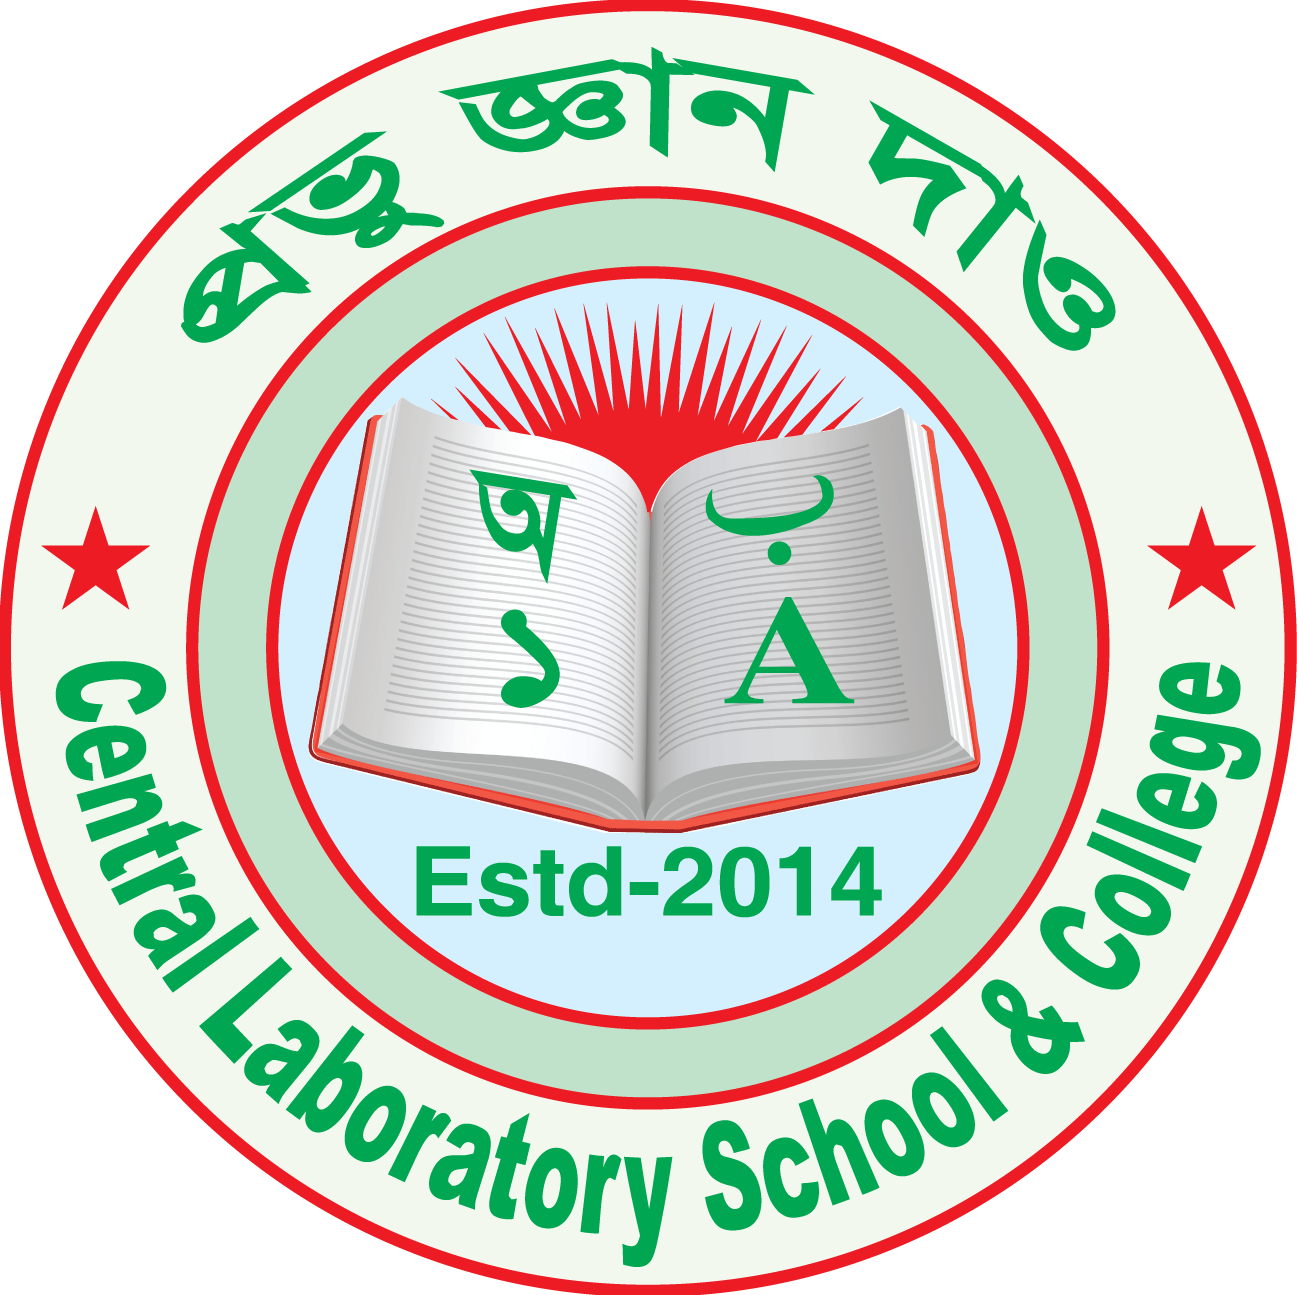 Central Laboratory School & College